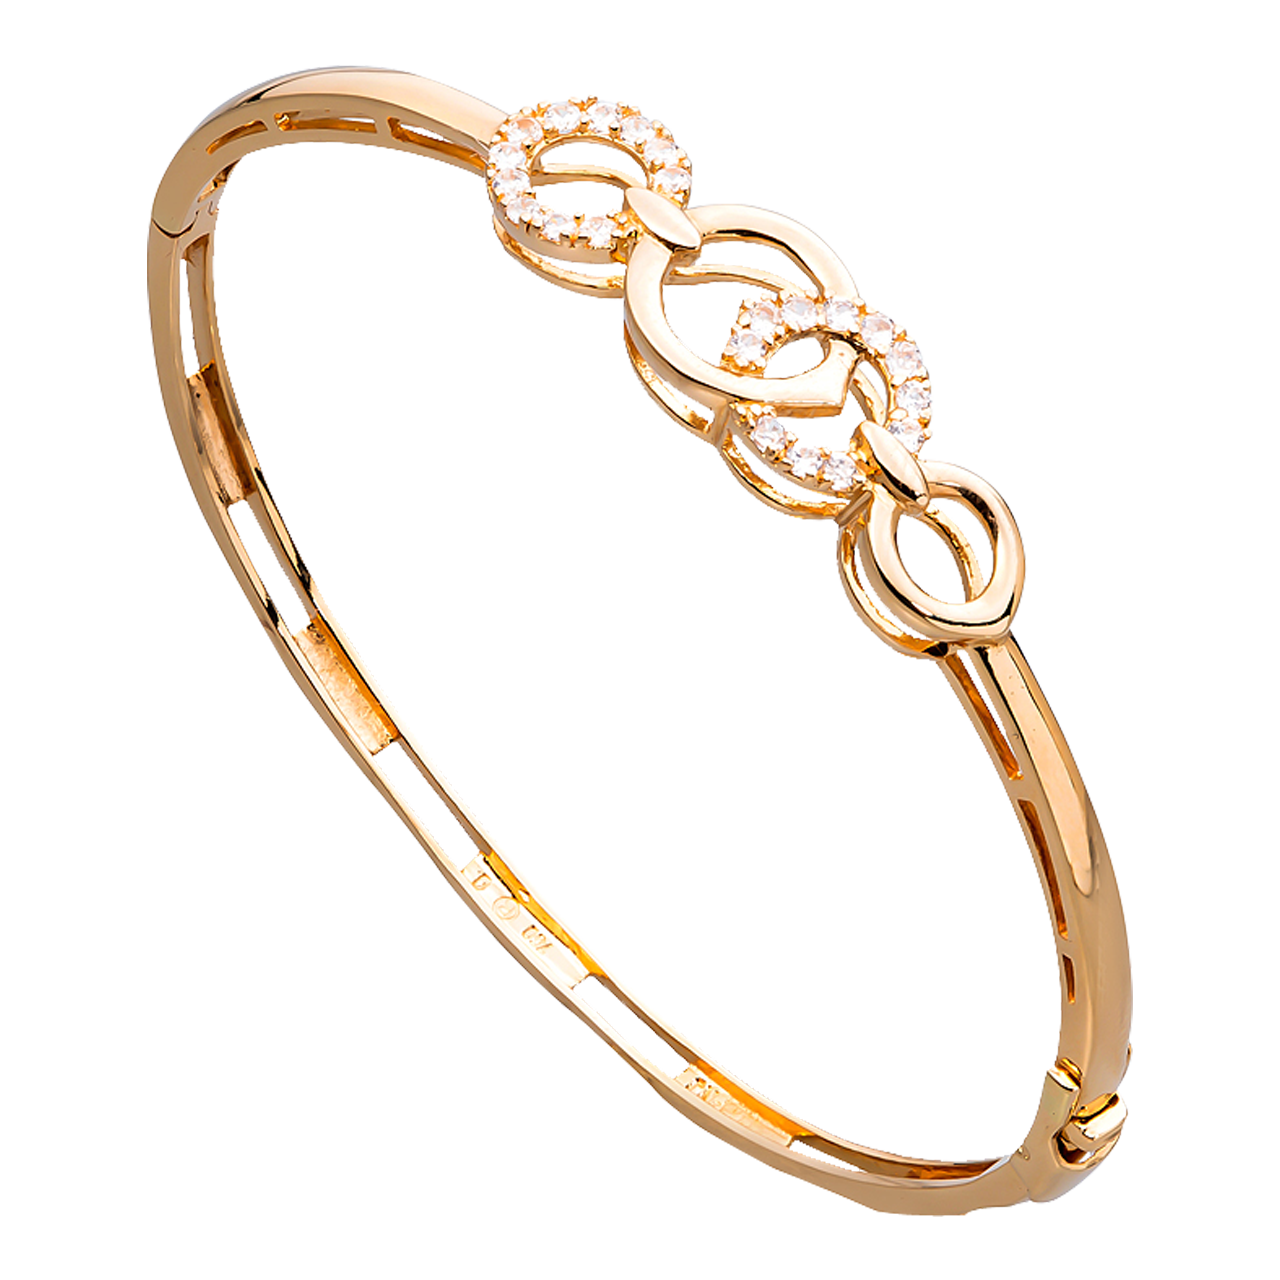 Vòng đeo tay vàng Hàn Quốc PNJ là món đồ trang sức sang trọng, đẳng cấp dành cho những người yêu thích phong cách Hàn Quốc. Với chất liệu vàng 24k cao cấp và thiết kế đẹp mắt, chiếc vòng đeo tay này sẽ khiến cho bạn trở nên cuốn hút và quý phái hơn bao giờ hết.